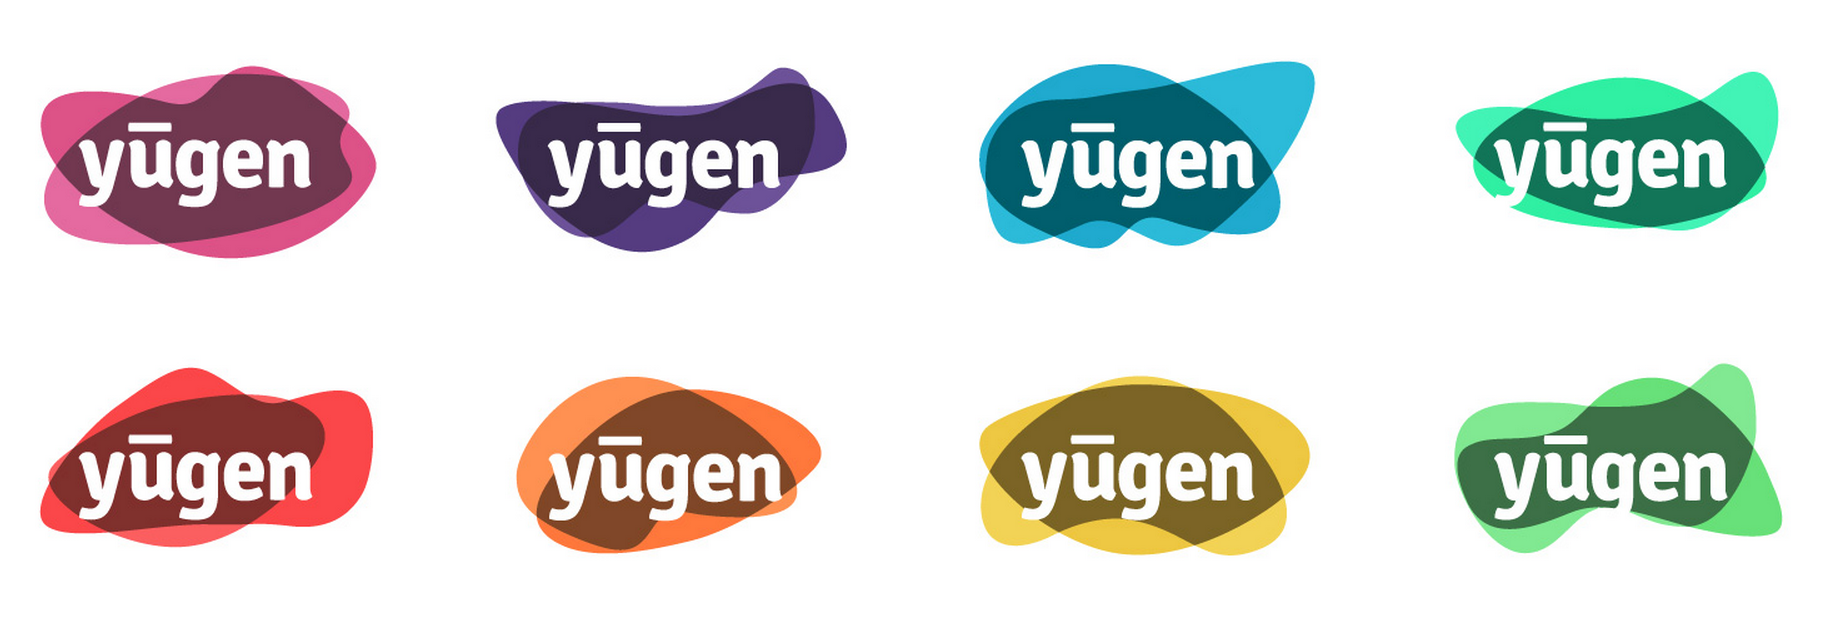 Рисунок 2. Пример логотипа «yugen» на технологии HTML5 от компании bythebooth (http://bythebooth.com/portfolio/yugen-html5-logo)